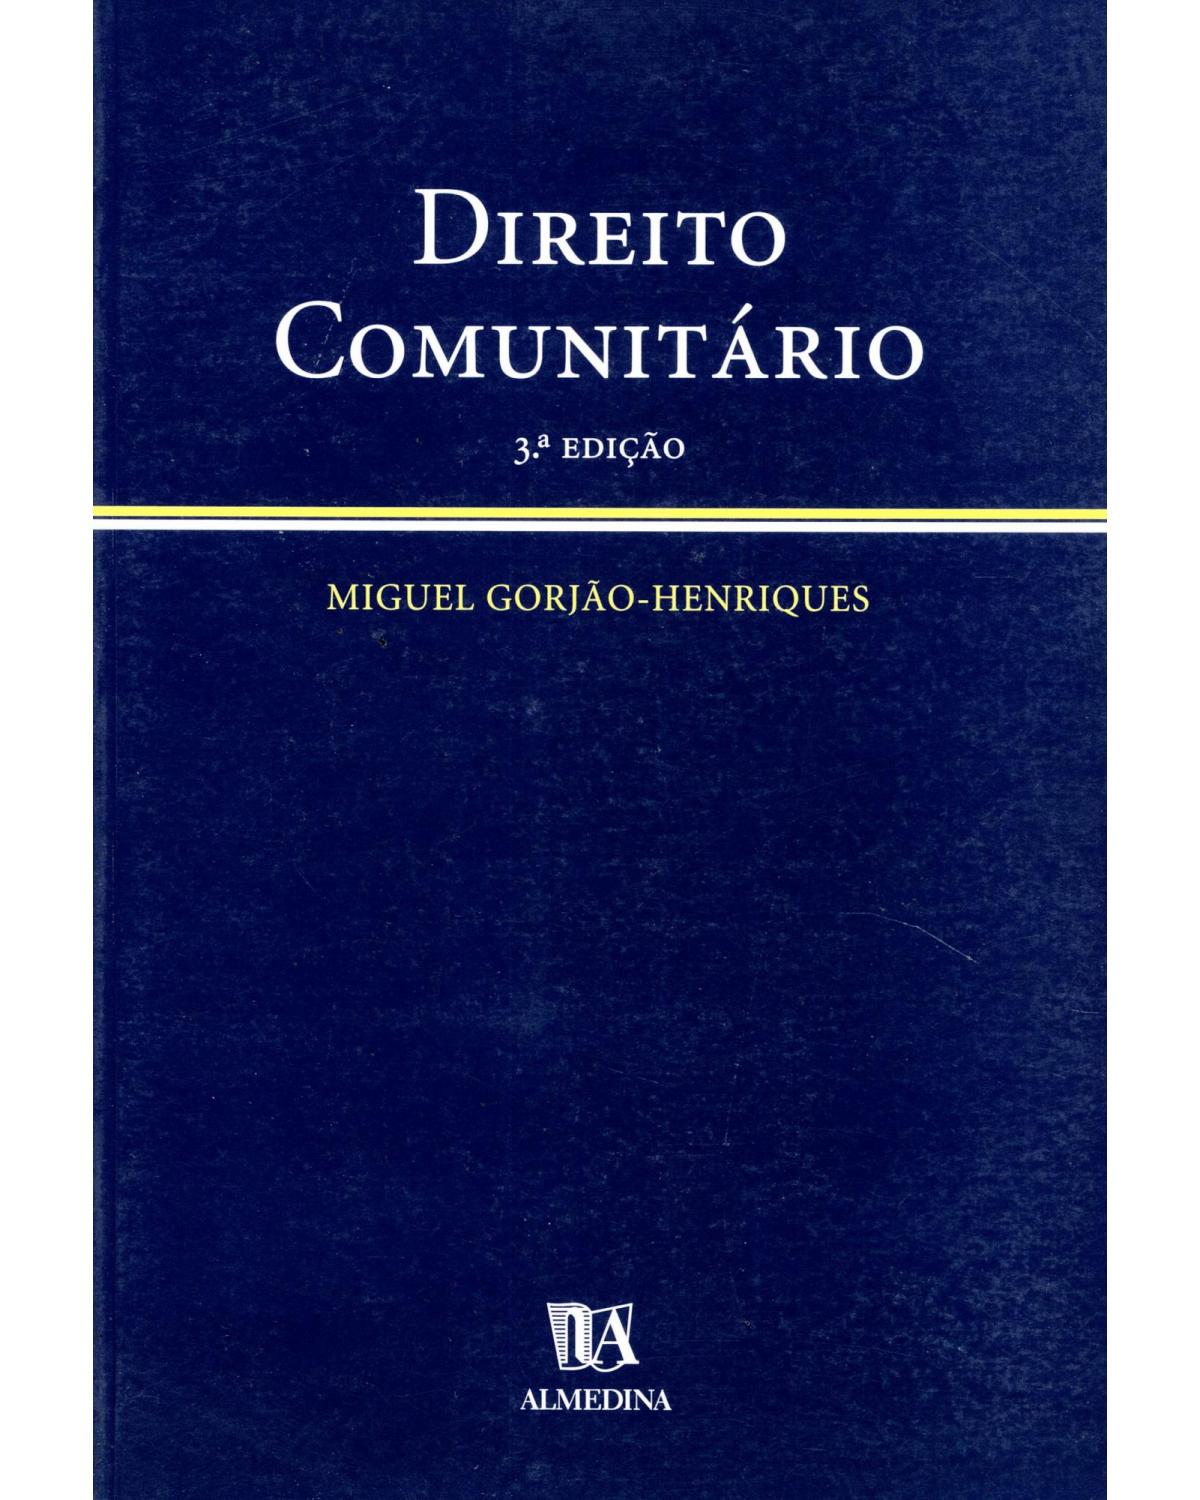 Direito comunitário - sumários desenvolvidos - 3ª Edição | 2005